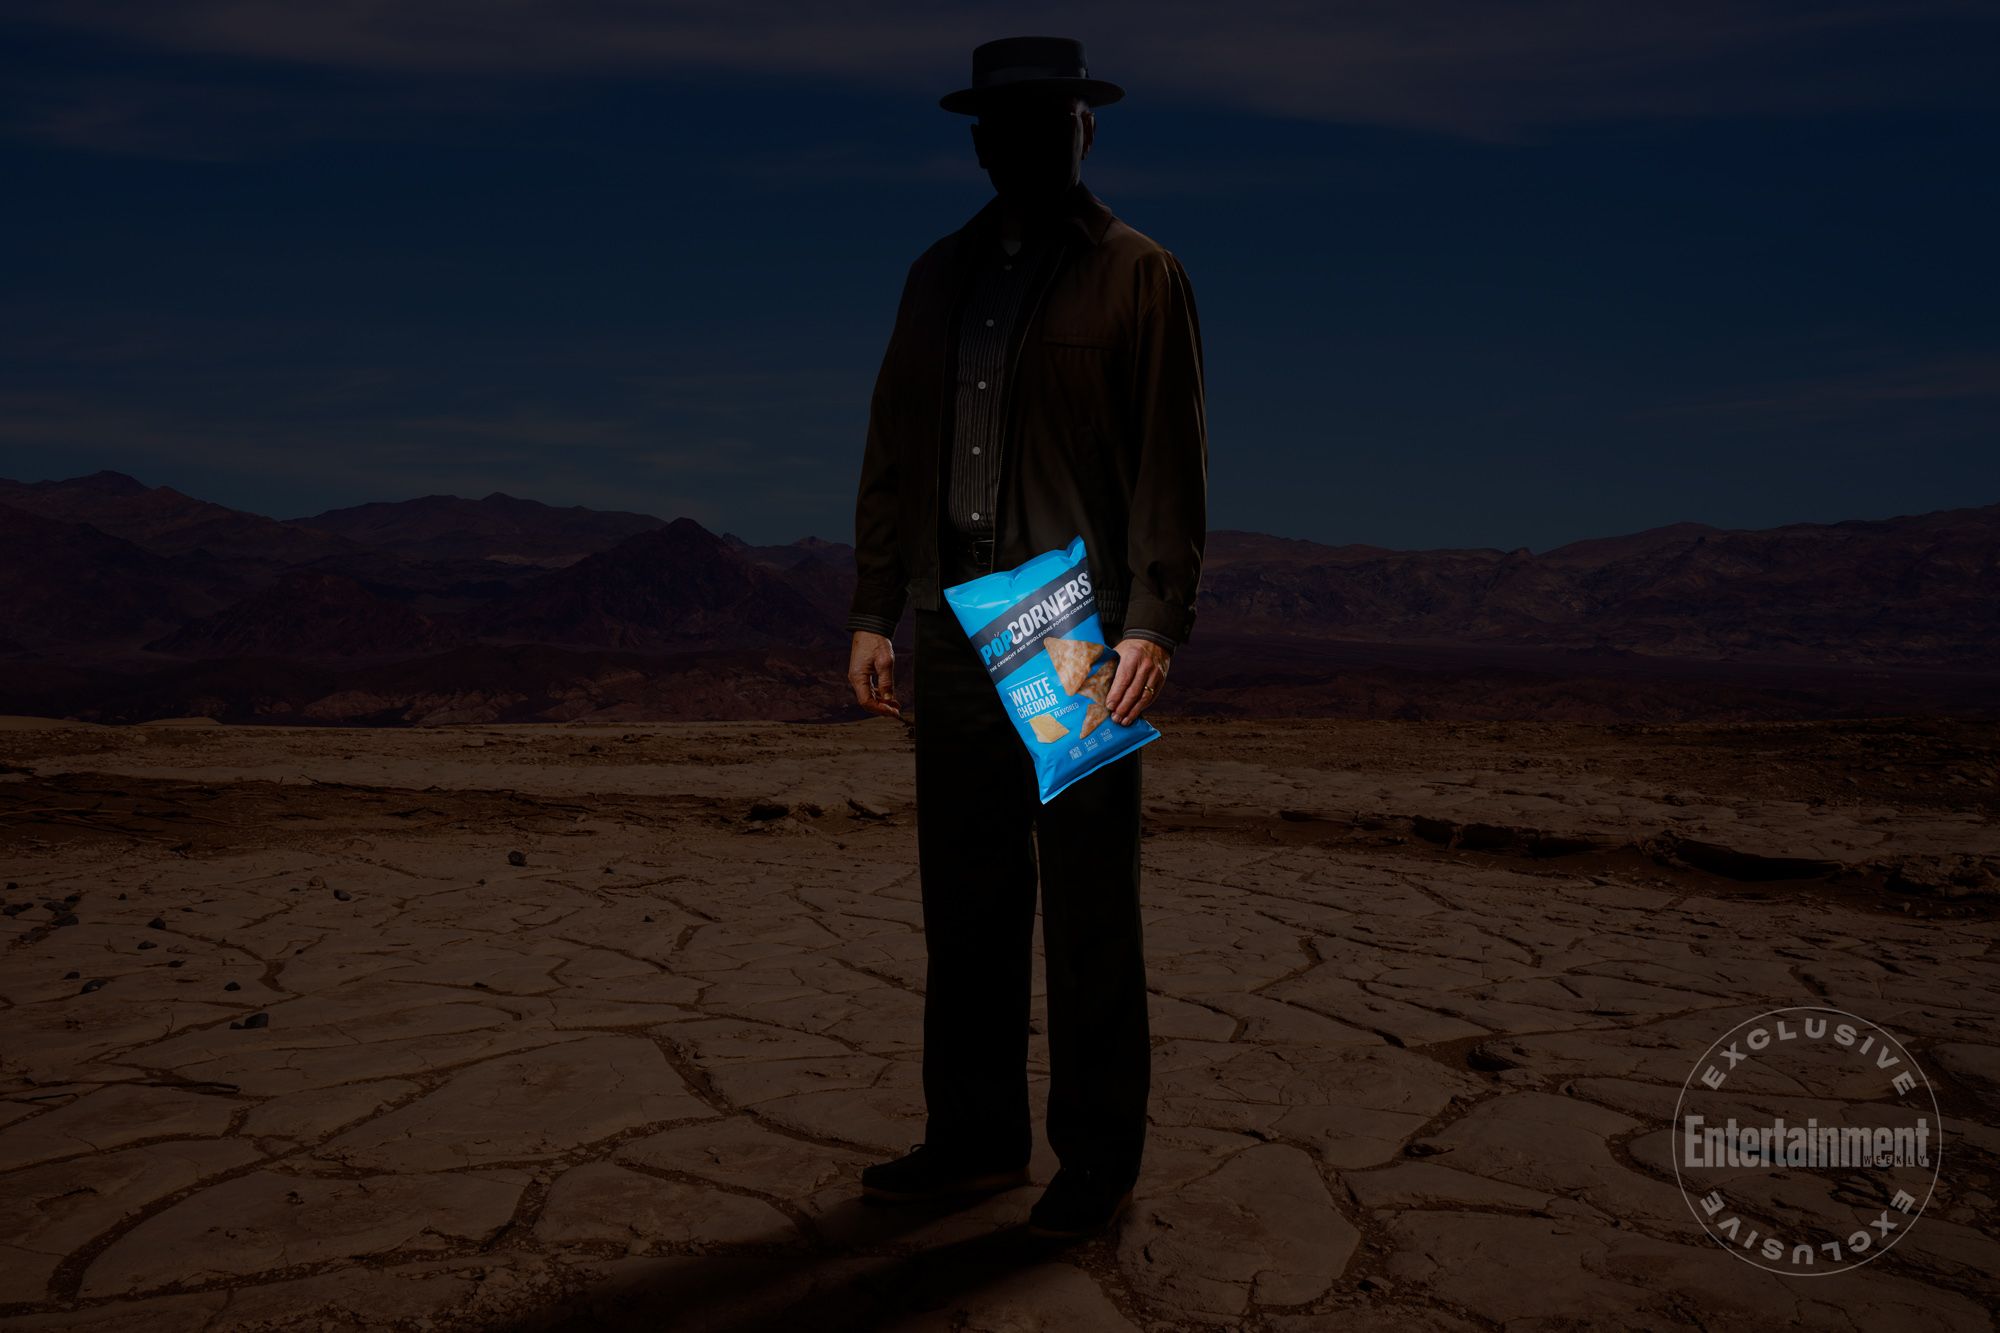 Uma misteriosa figura sombria que parece ser Walter White, de Breaking Bad, está no deserto segurando um saco de salgadinhos PopCorners na mão